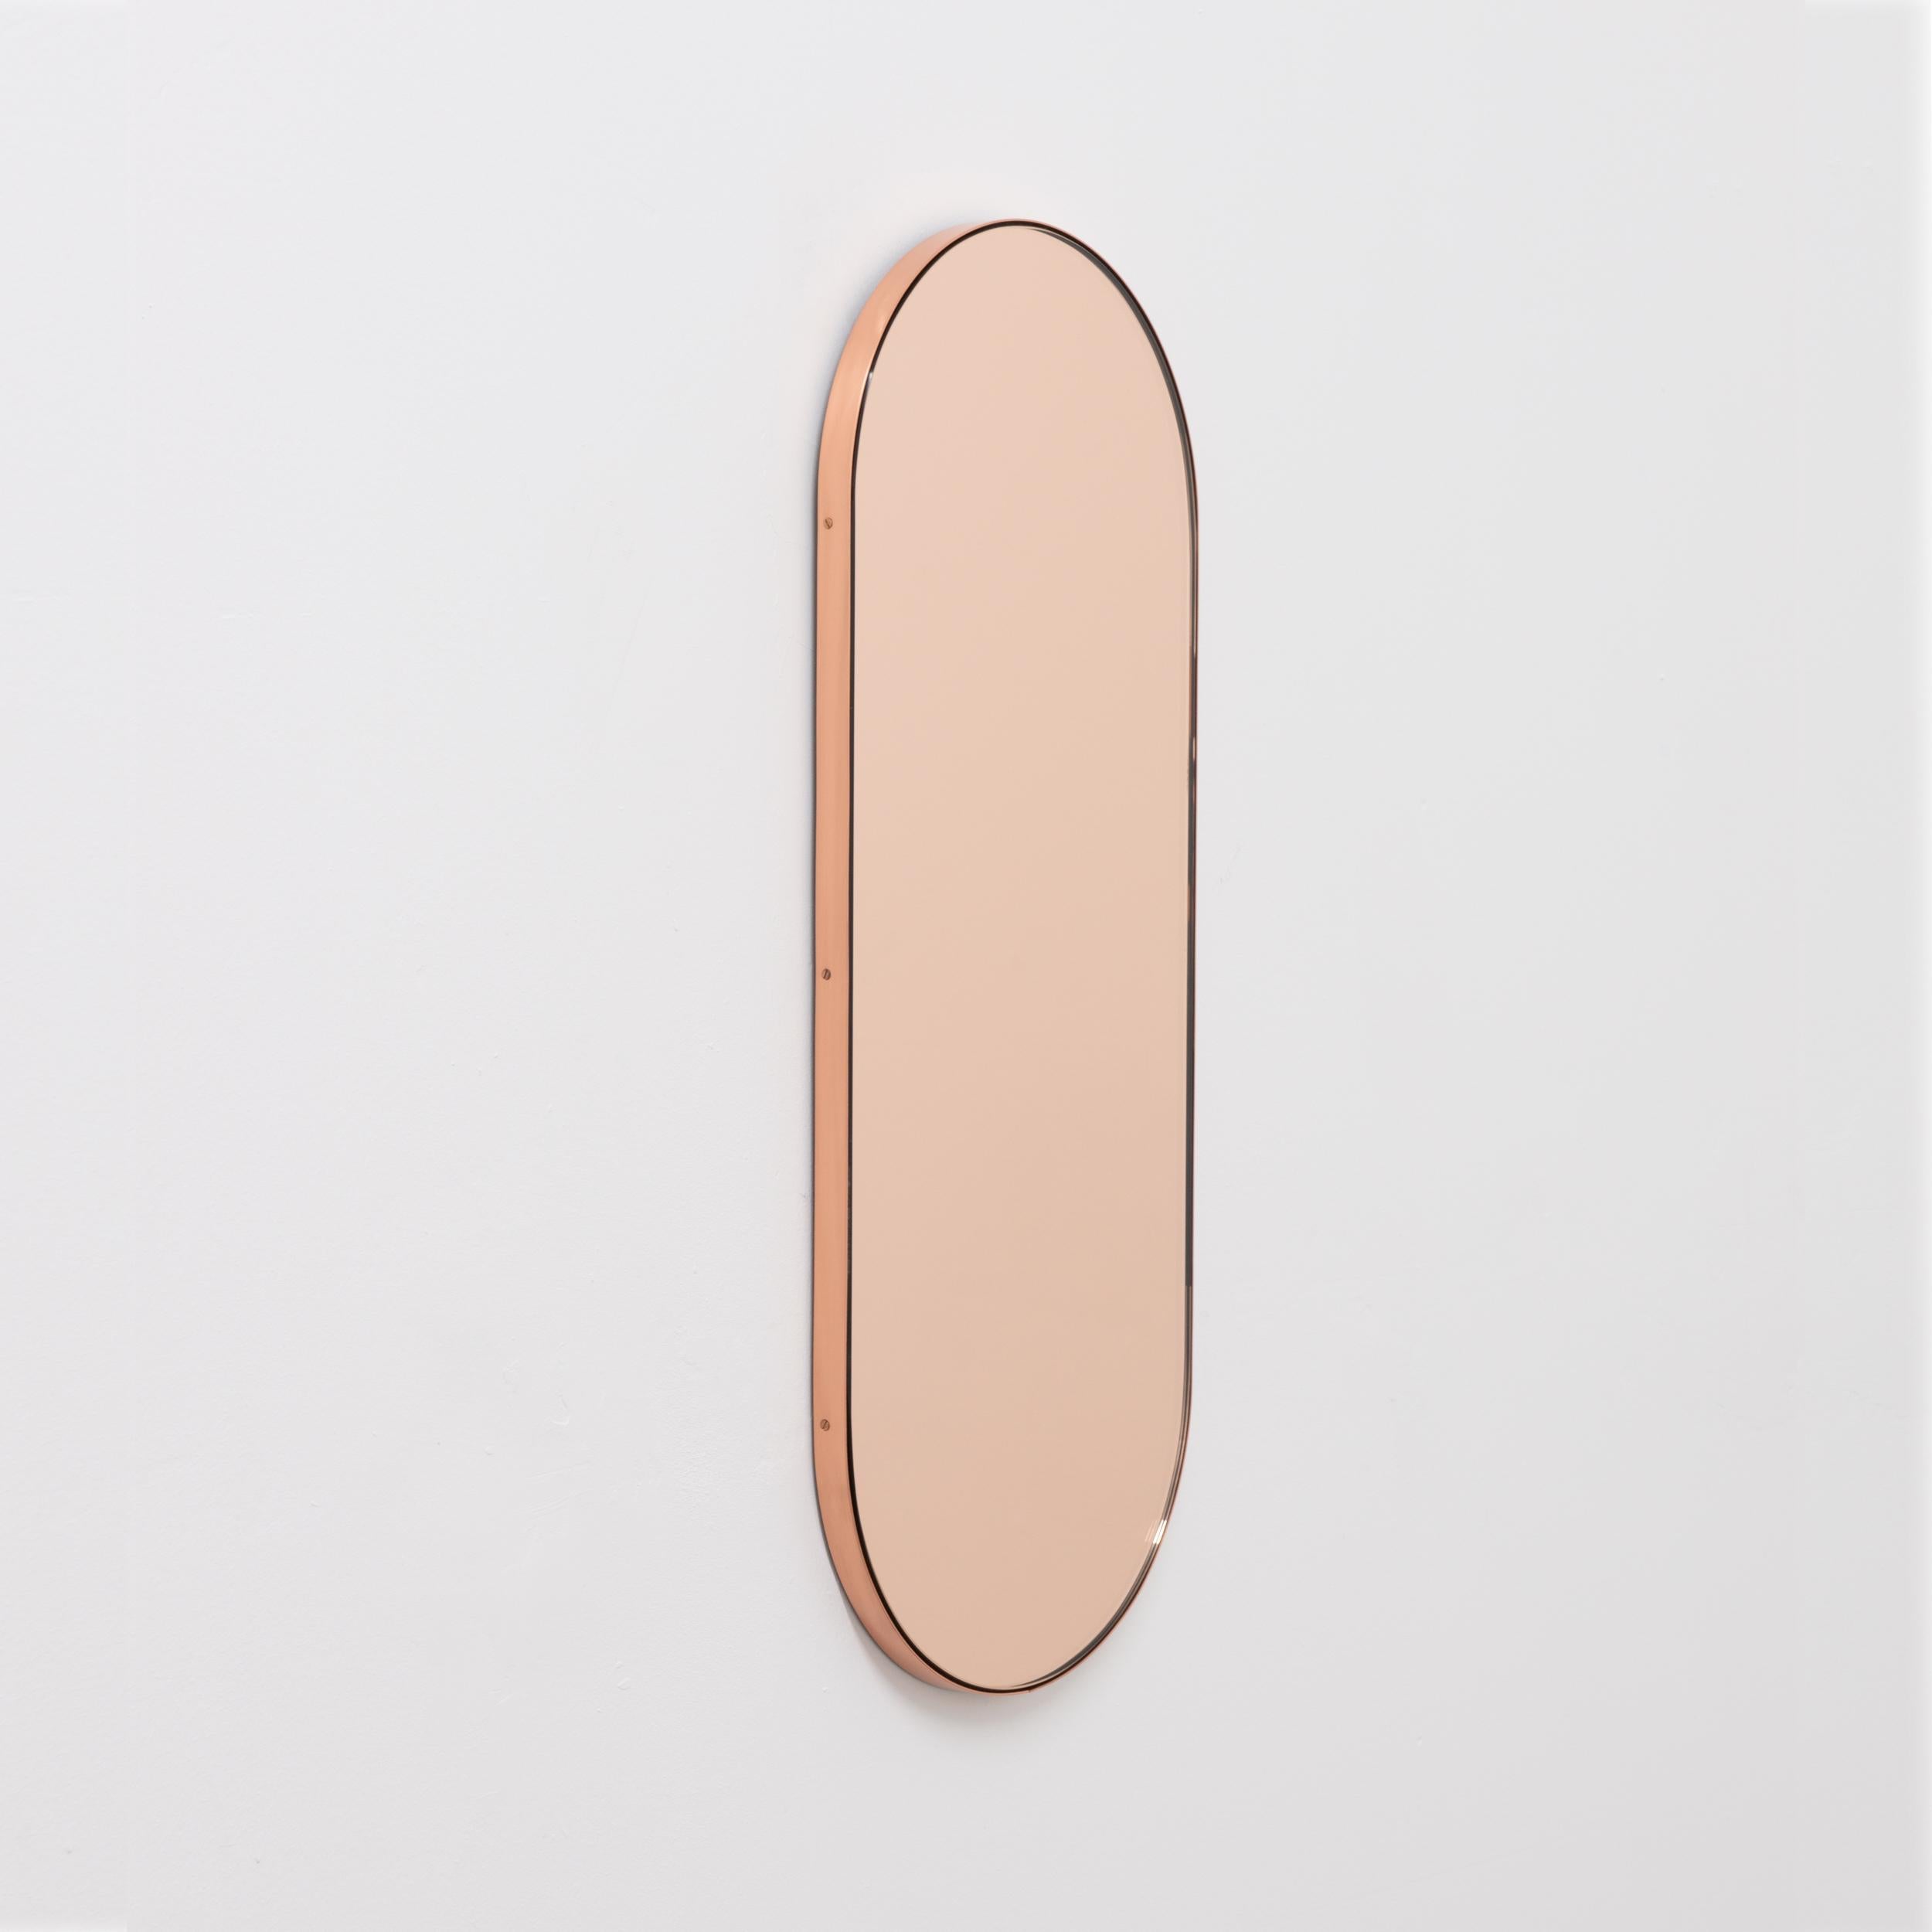 Miroir contemporain en forme de capsule en or rose ou pêche avec un élégant cadre en cuivre. Conçu et fabriqué à la main à Londres, au Royaume-Uni.

Les miroirs de taille moyenne, grande et extra-large (37cm x 56cm, 46cm x 71cm et 48cm x 97cm) sont